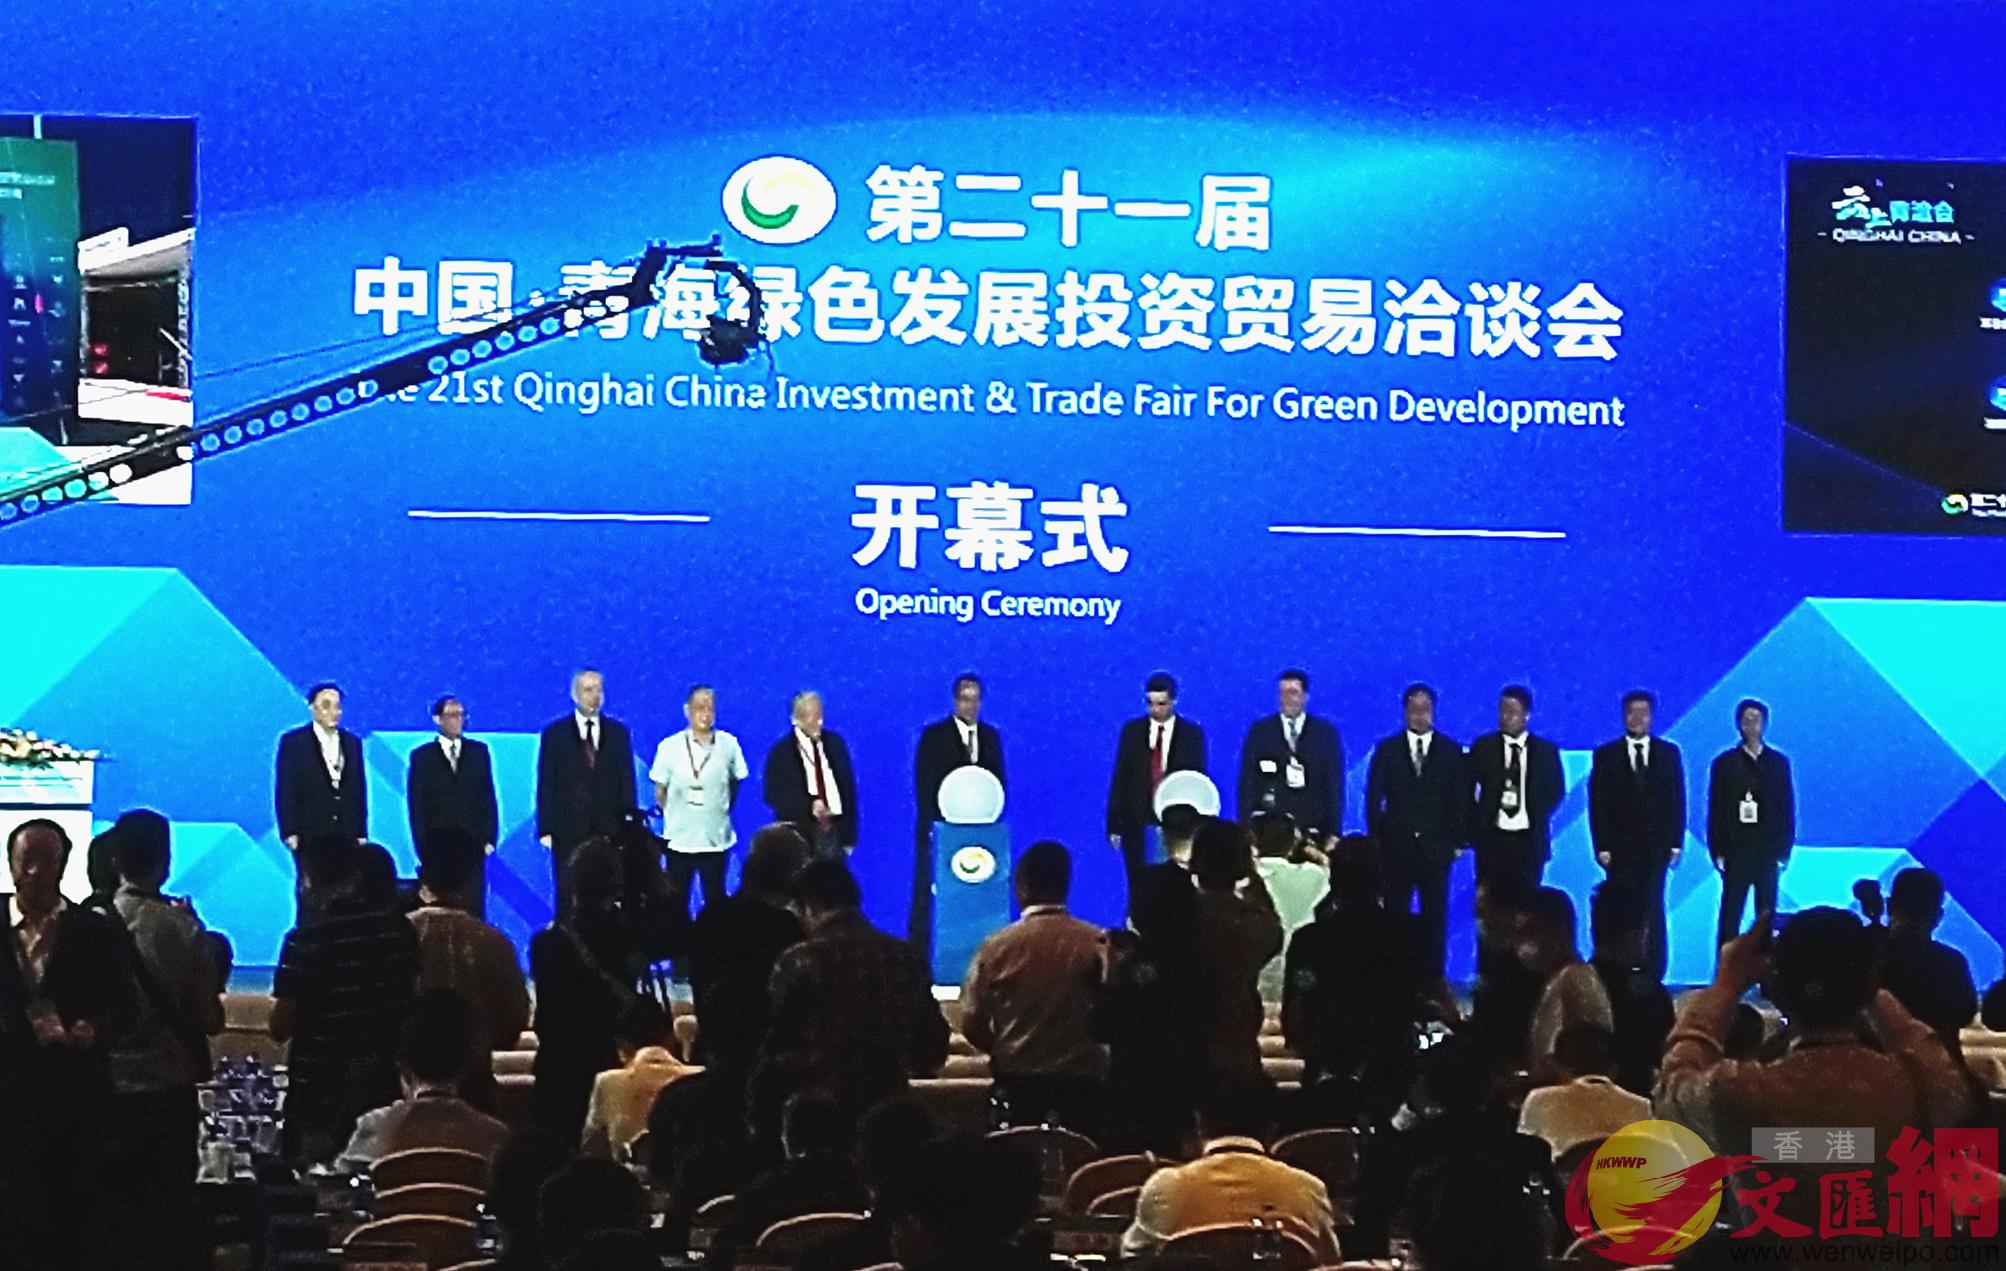 第二十一屆中國青海綠色發展投資貿易洽談會開幕C]記者李陽波攝^